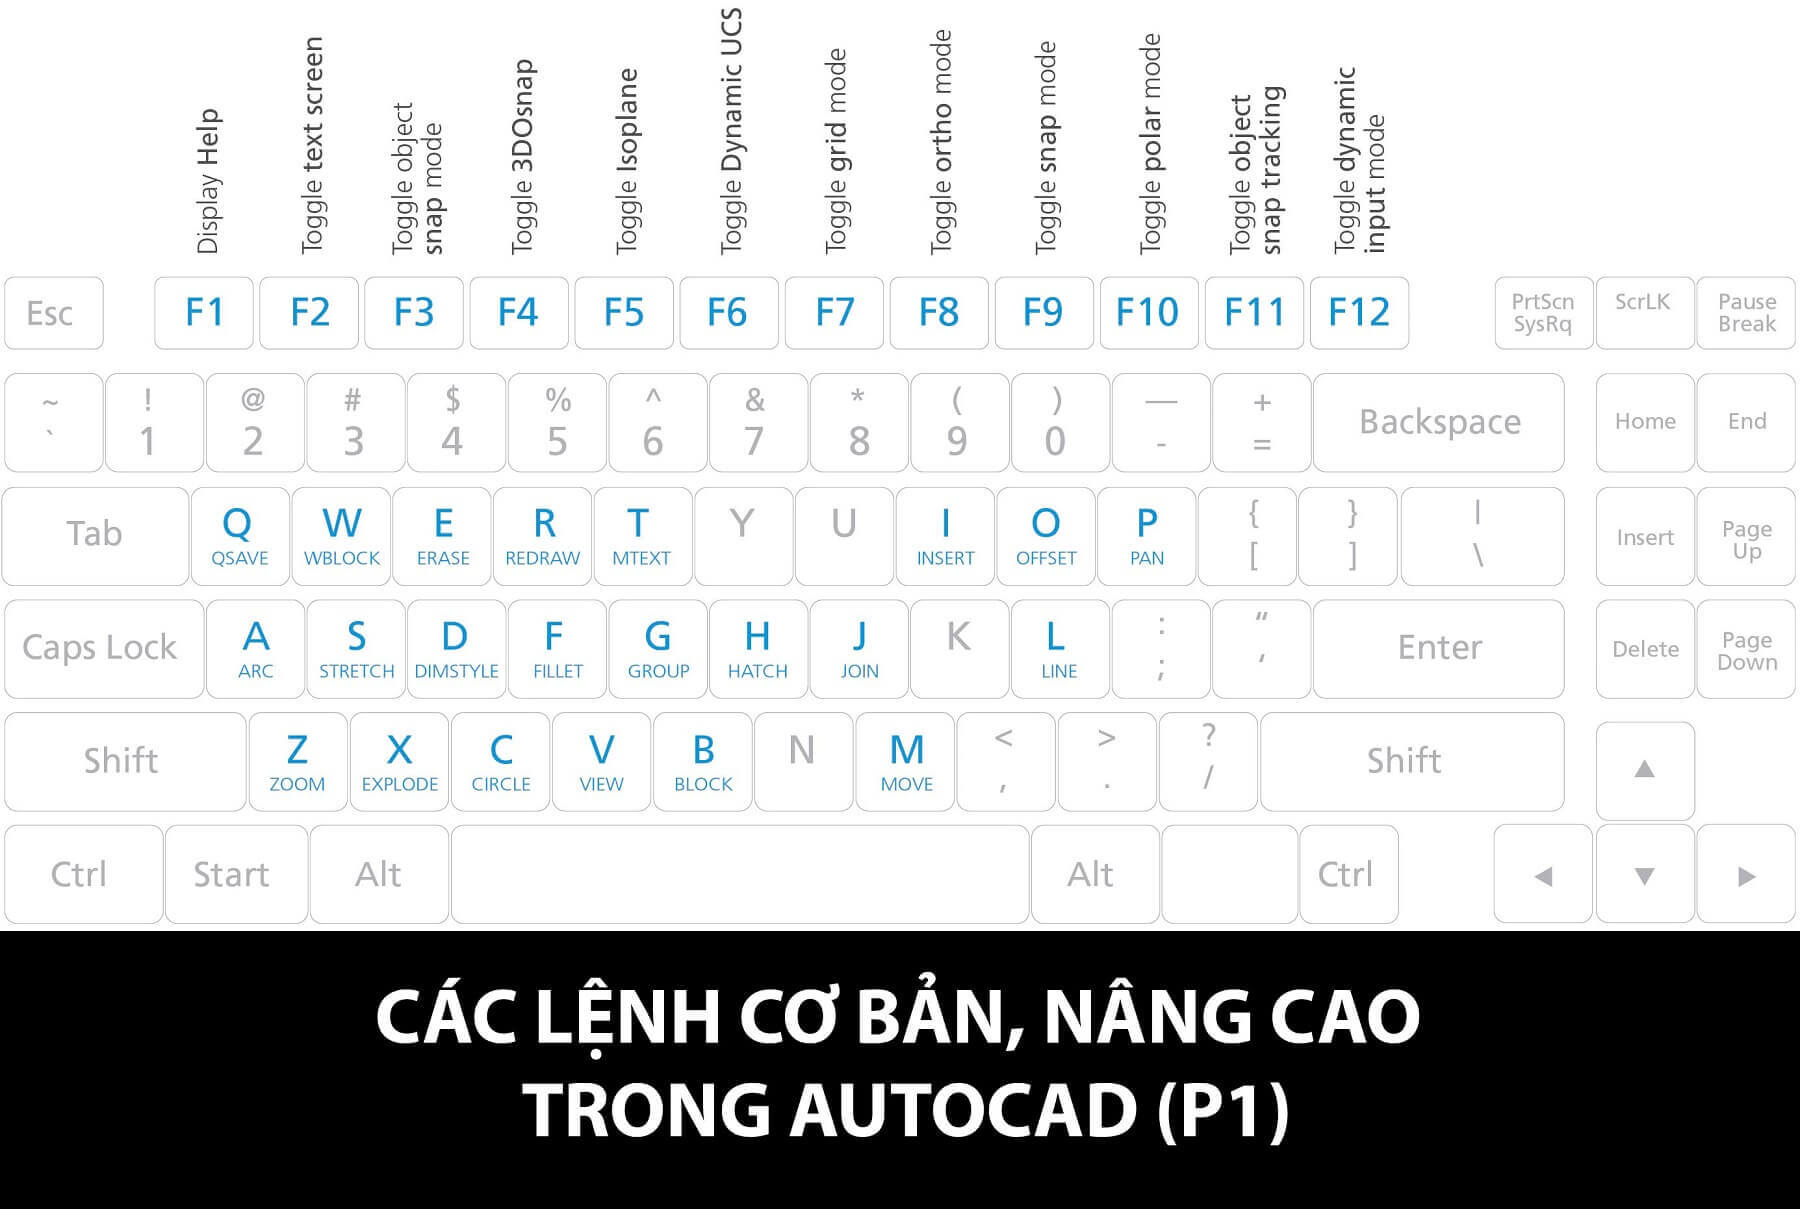 Full   Tổng hợp tất cả các lệnh AutoCAD từ cơ bản tới nâng cao bằng hình  ảnh  Trang chủ  Cộng Đồng Autocad Việt Nam